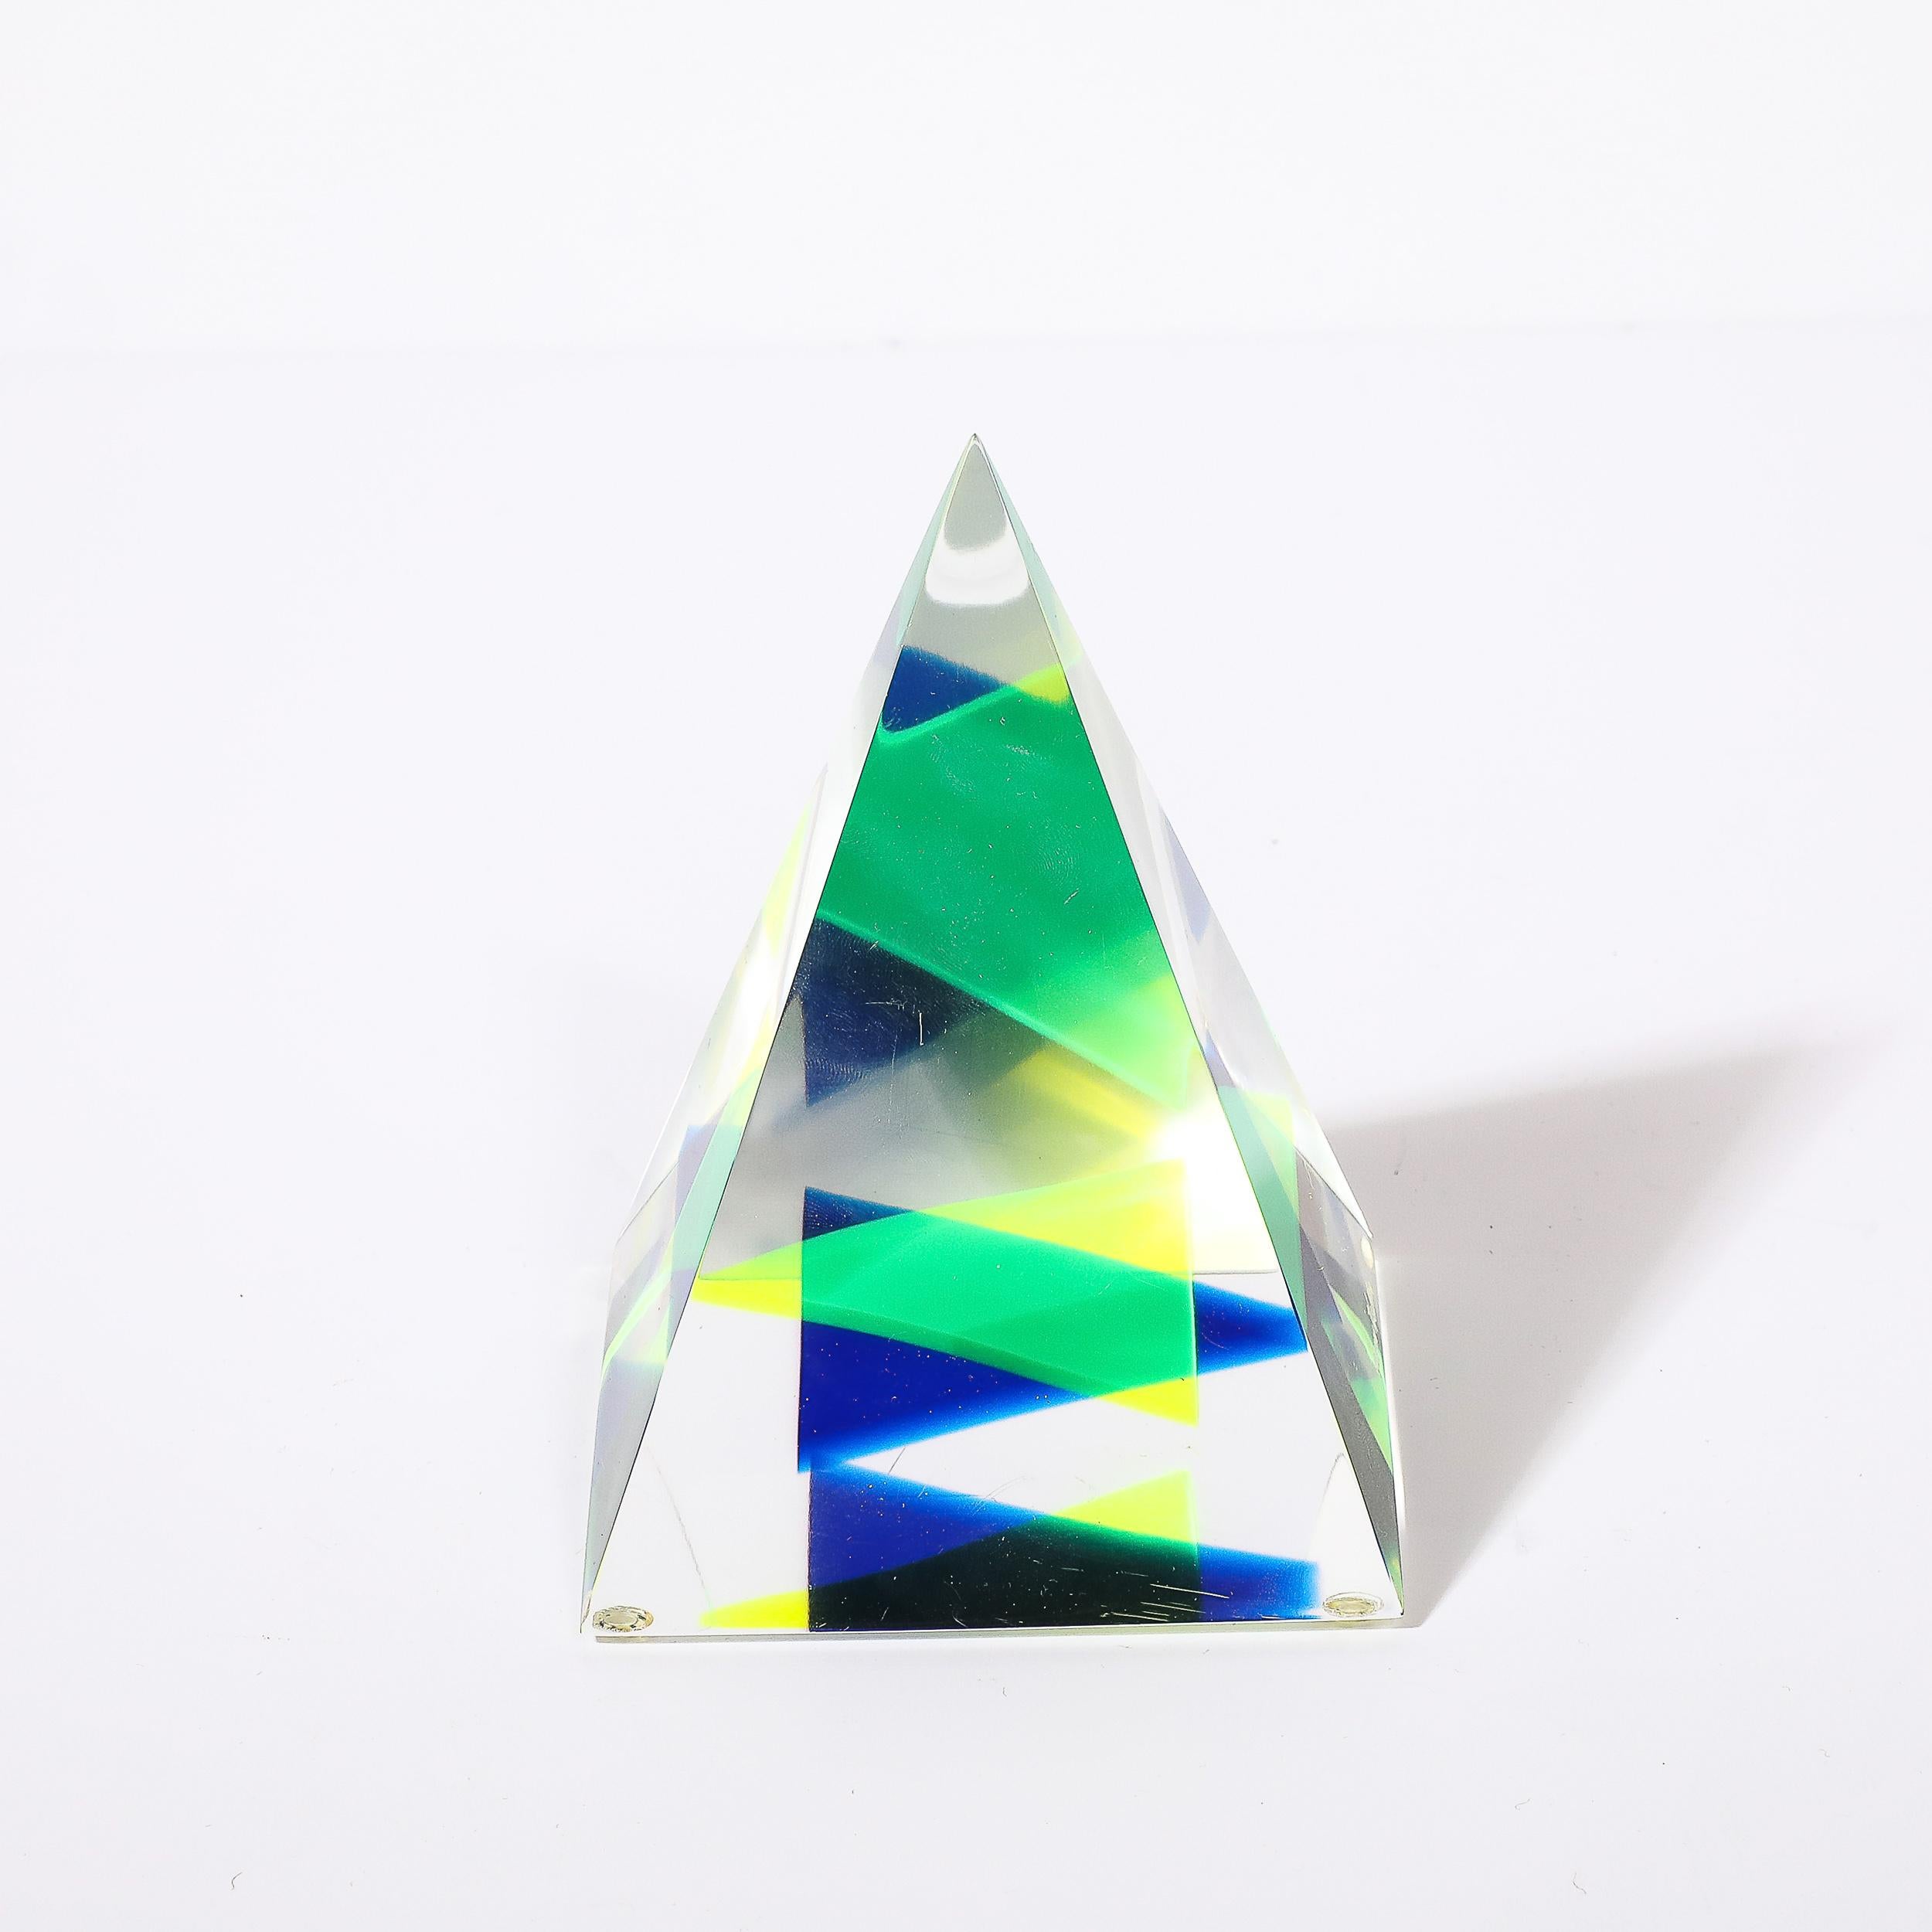 Cette sculpture pyramidale en lucite, unique et géométriquement dynamique, est signée par Yaccov Heller et provient des États-Unis, vers 1970. Elle présente une forme pyramidale avec de jolis jaune, turquoise et bleu outremer dispersés à l'intérieur